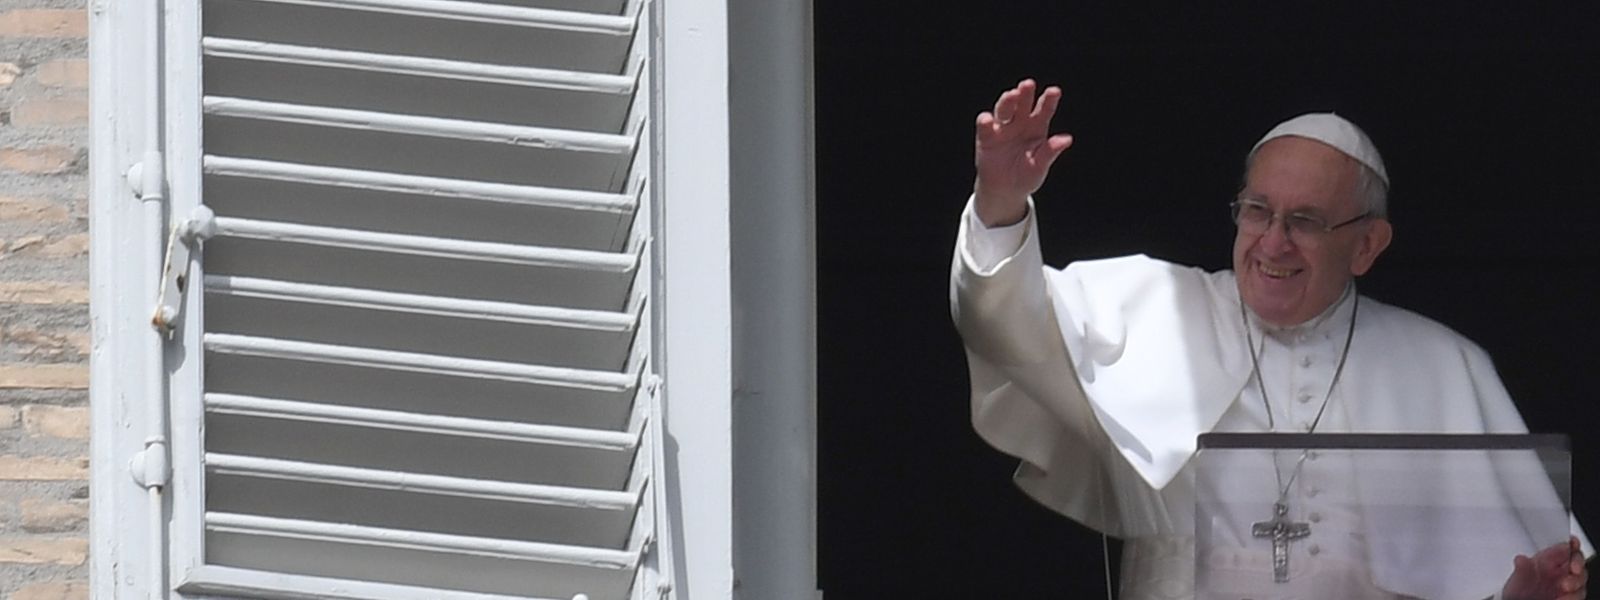 Papst Franziskus hat wichtige Pflöcke eingeschlagen, doch das wird nicht reichen, um die reformhungrigen Kräfte in der Kirche zu besänftigen.